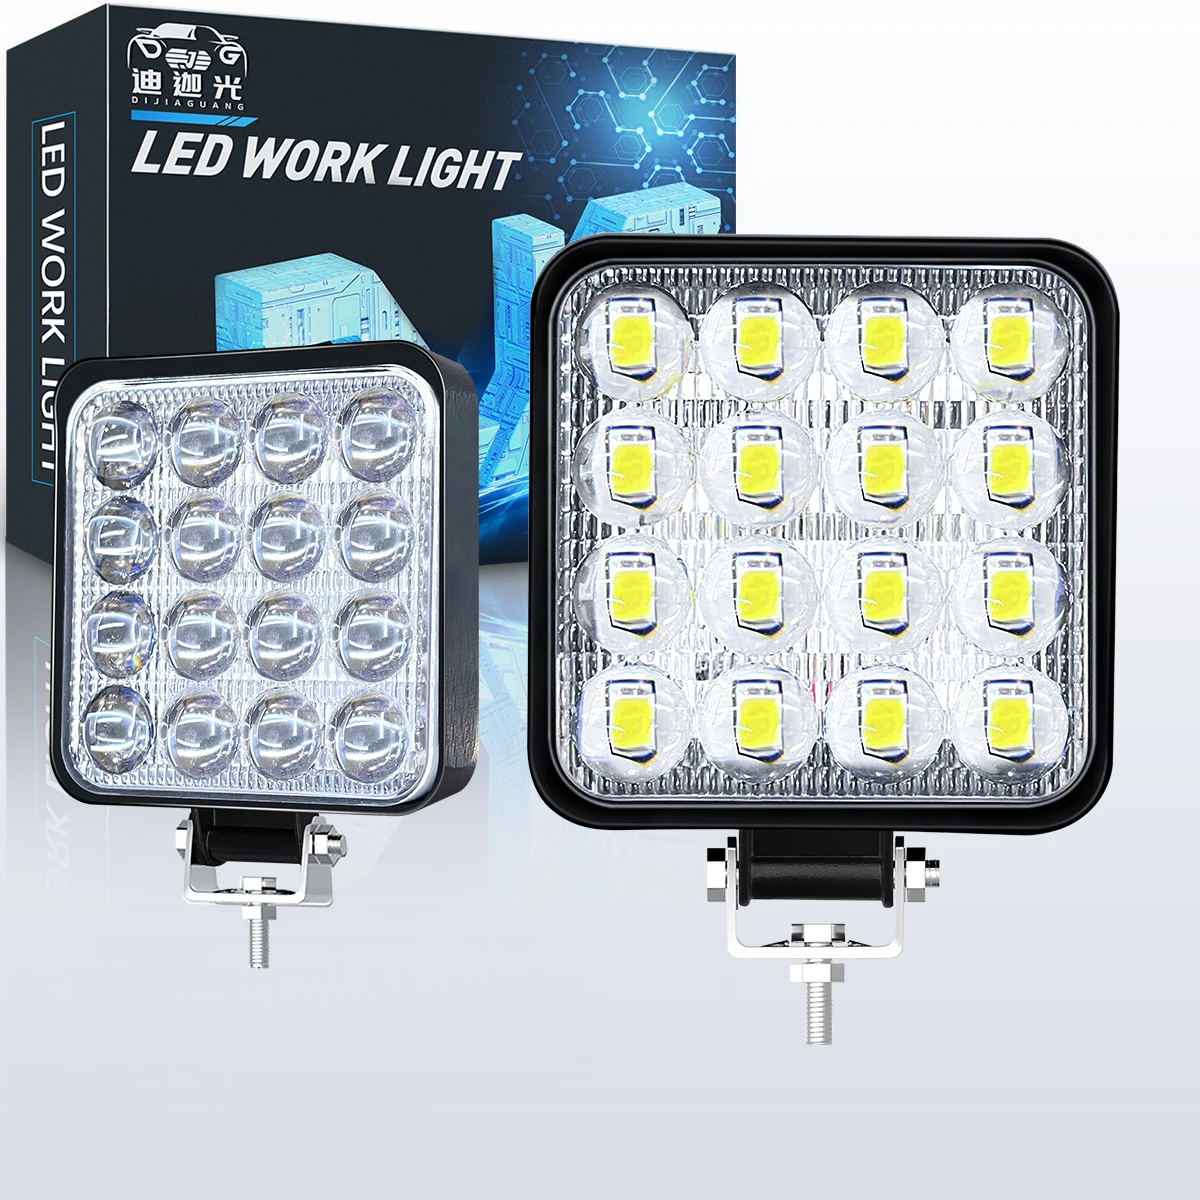 

12V Universal Square LED Work Light LED Truck spotLight White Driving Fog Lights w/ Bracket for Pickup 4WD SUV Off Road